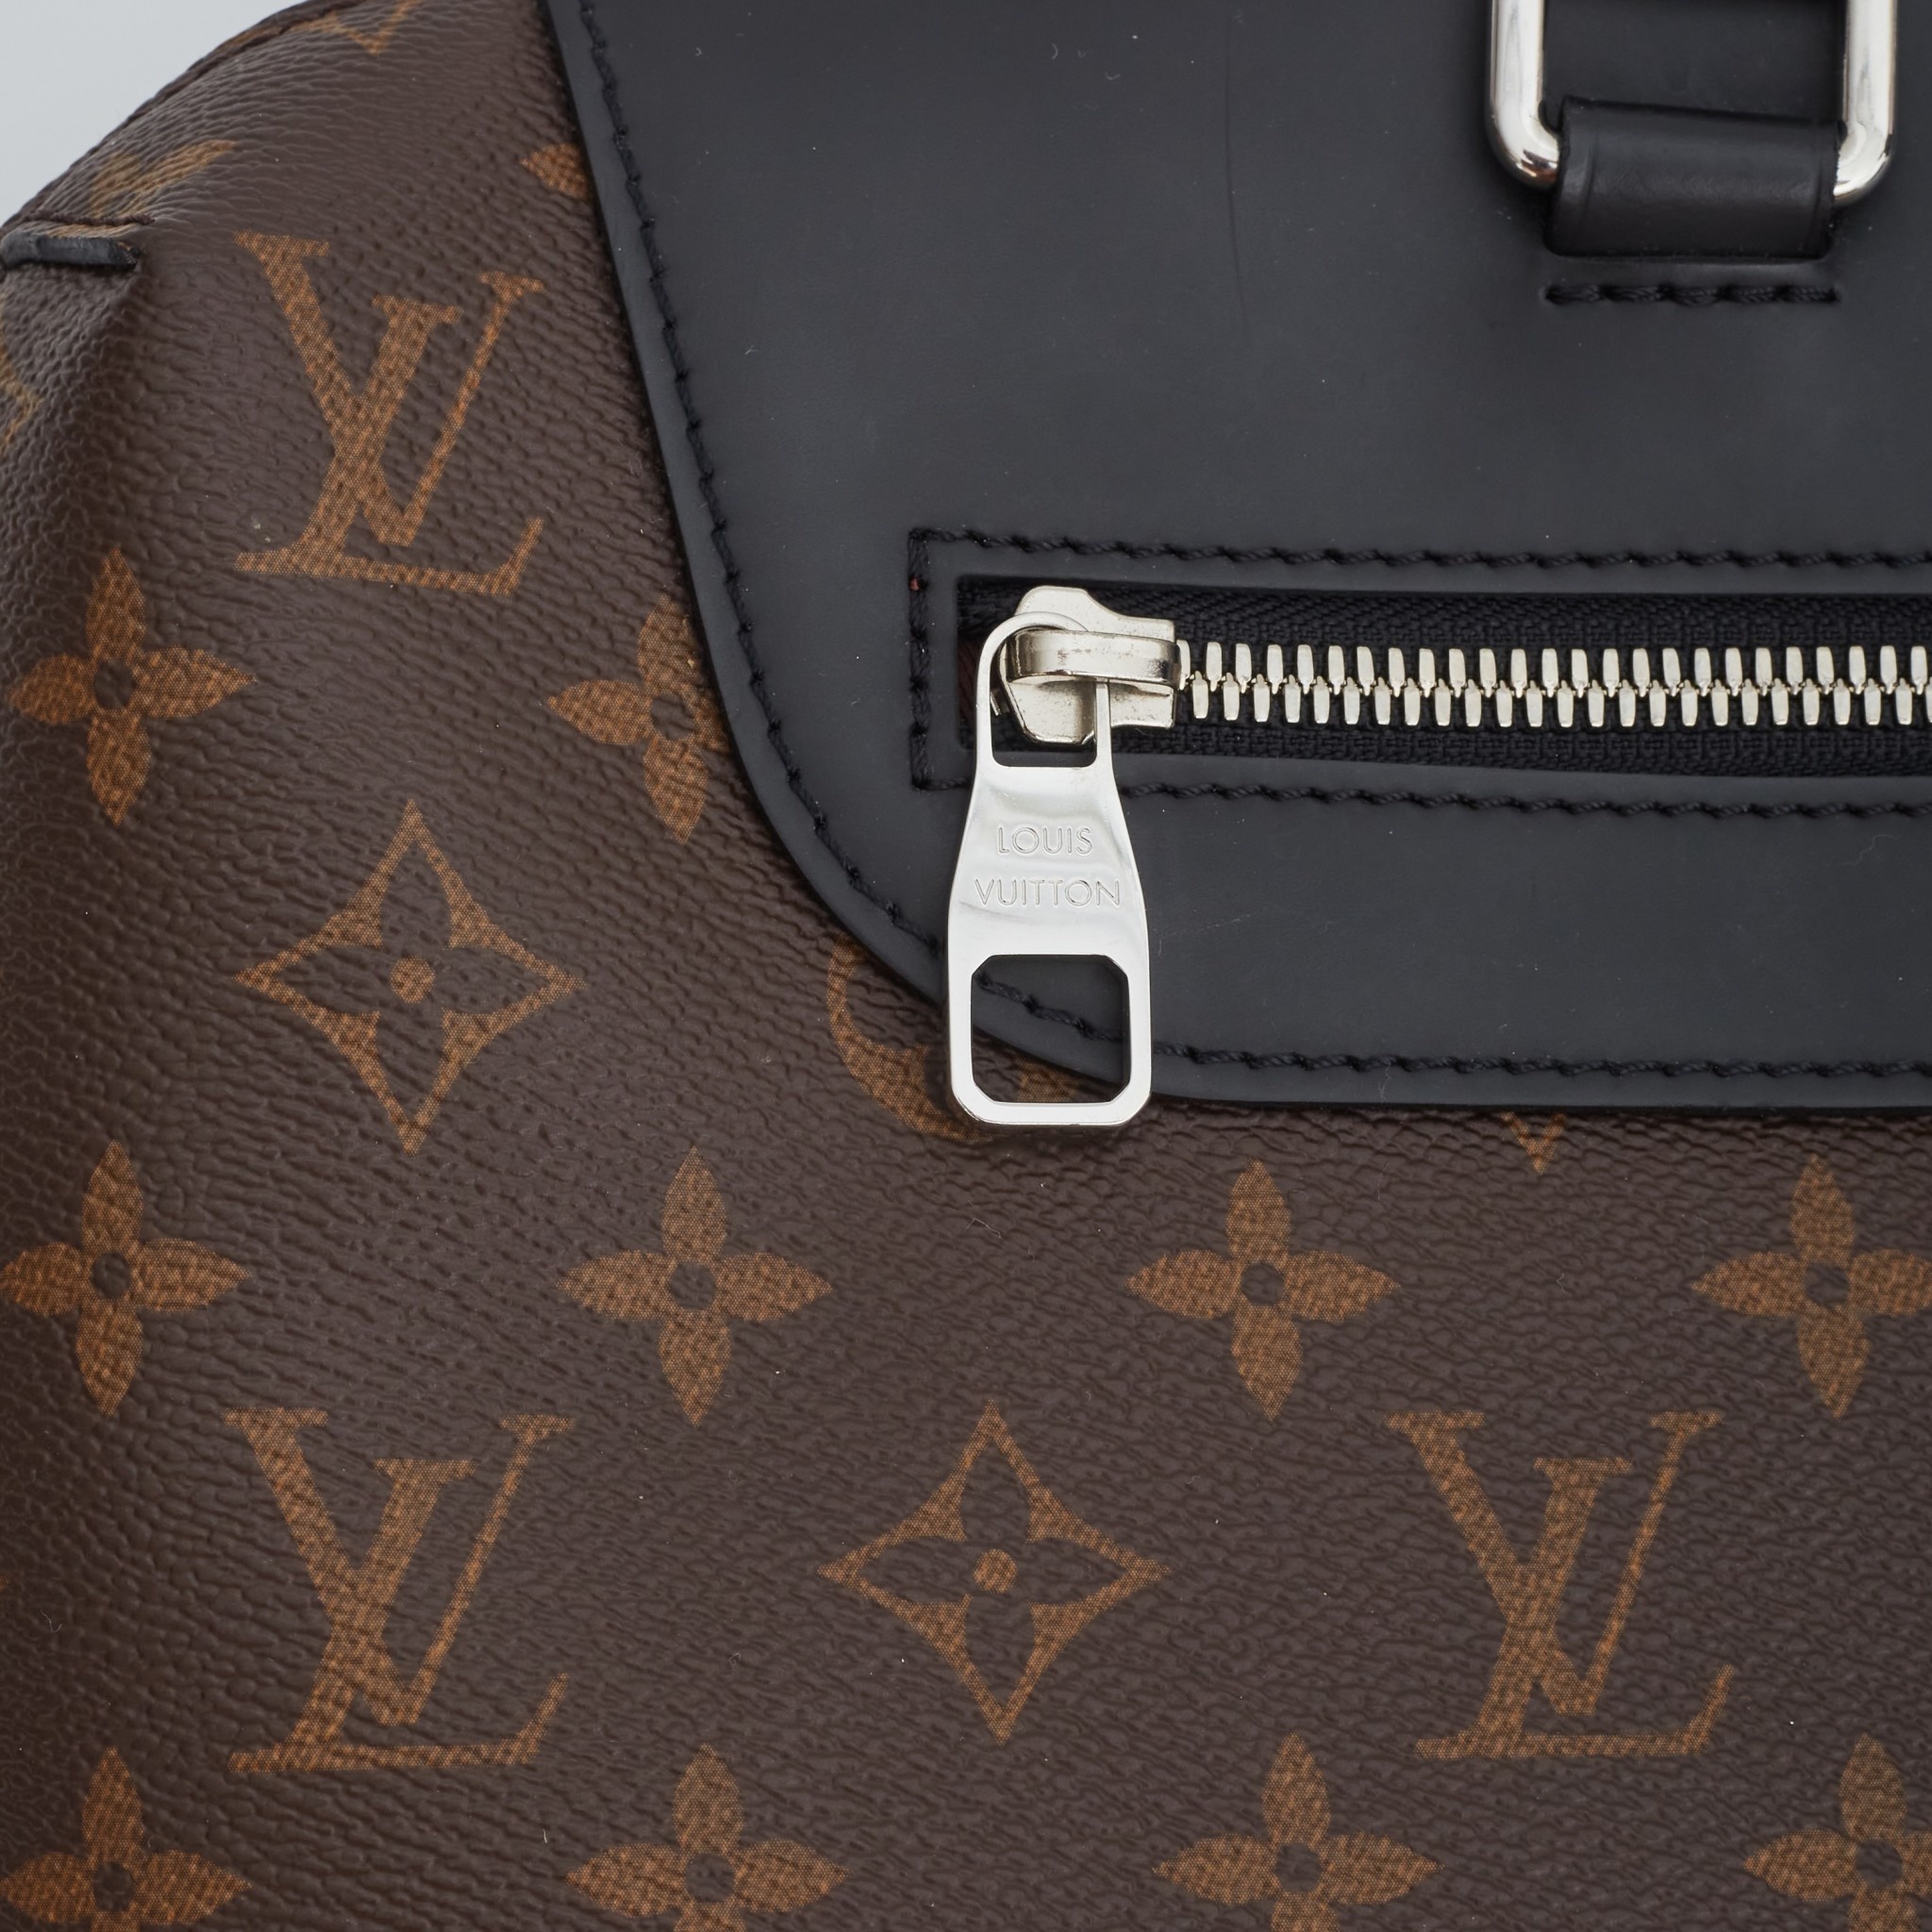 Louis Vuitton Porte Documents Jour Review 